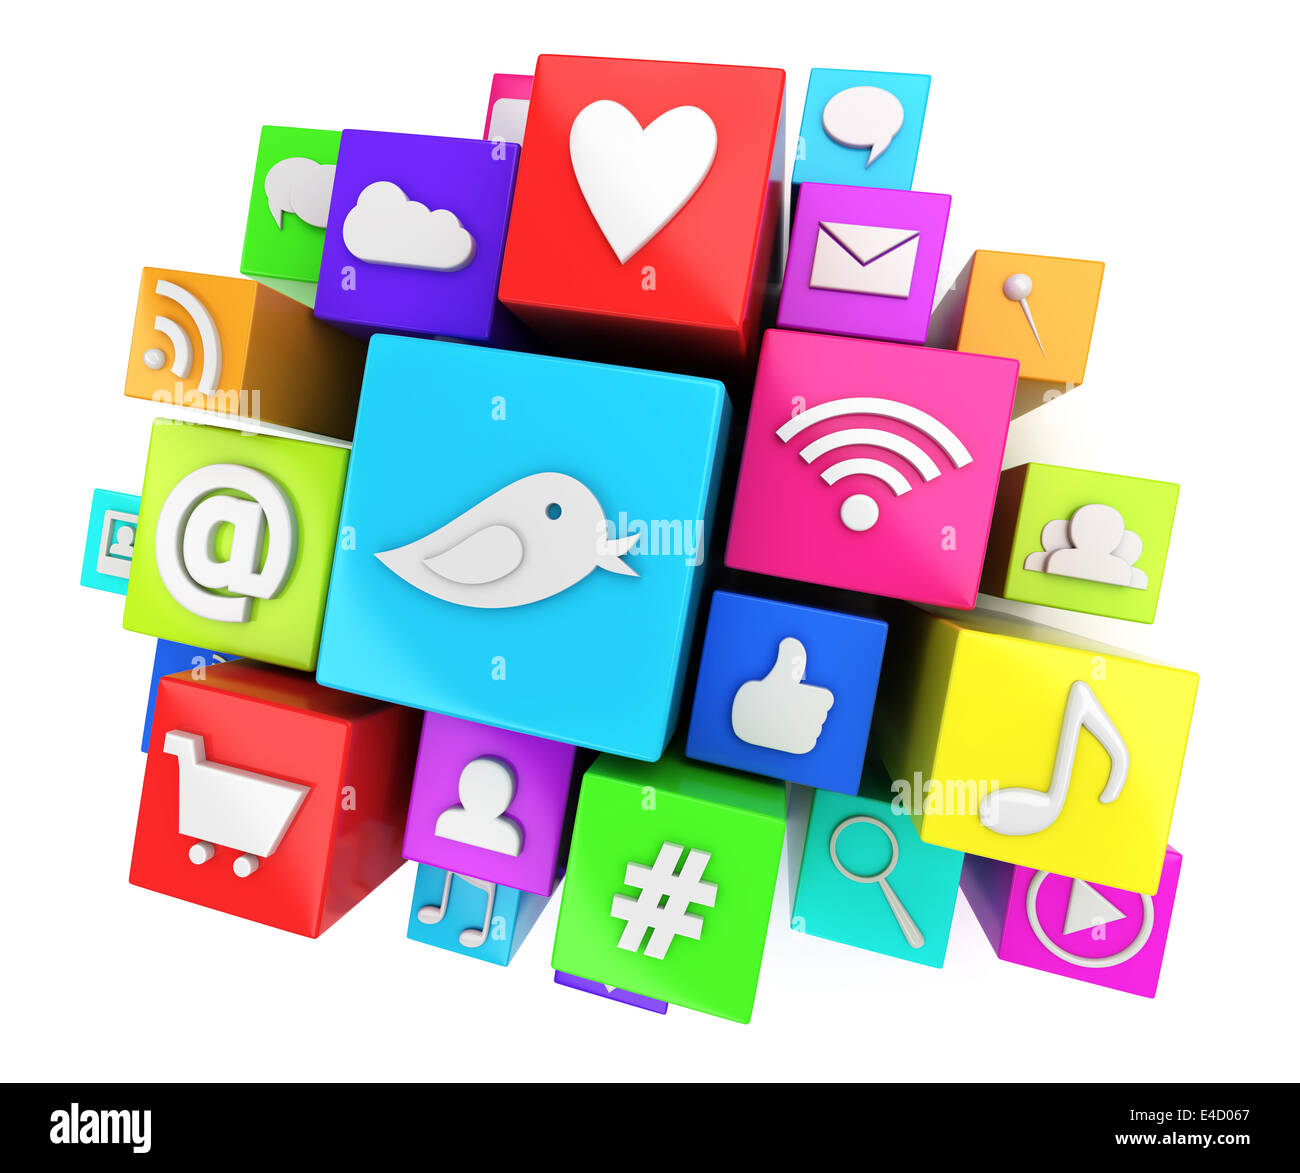 Social media symbols Stock Photo